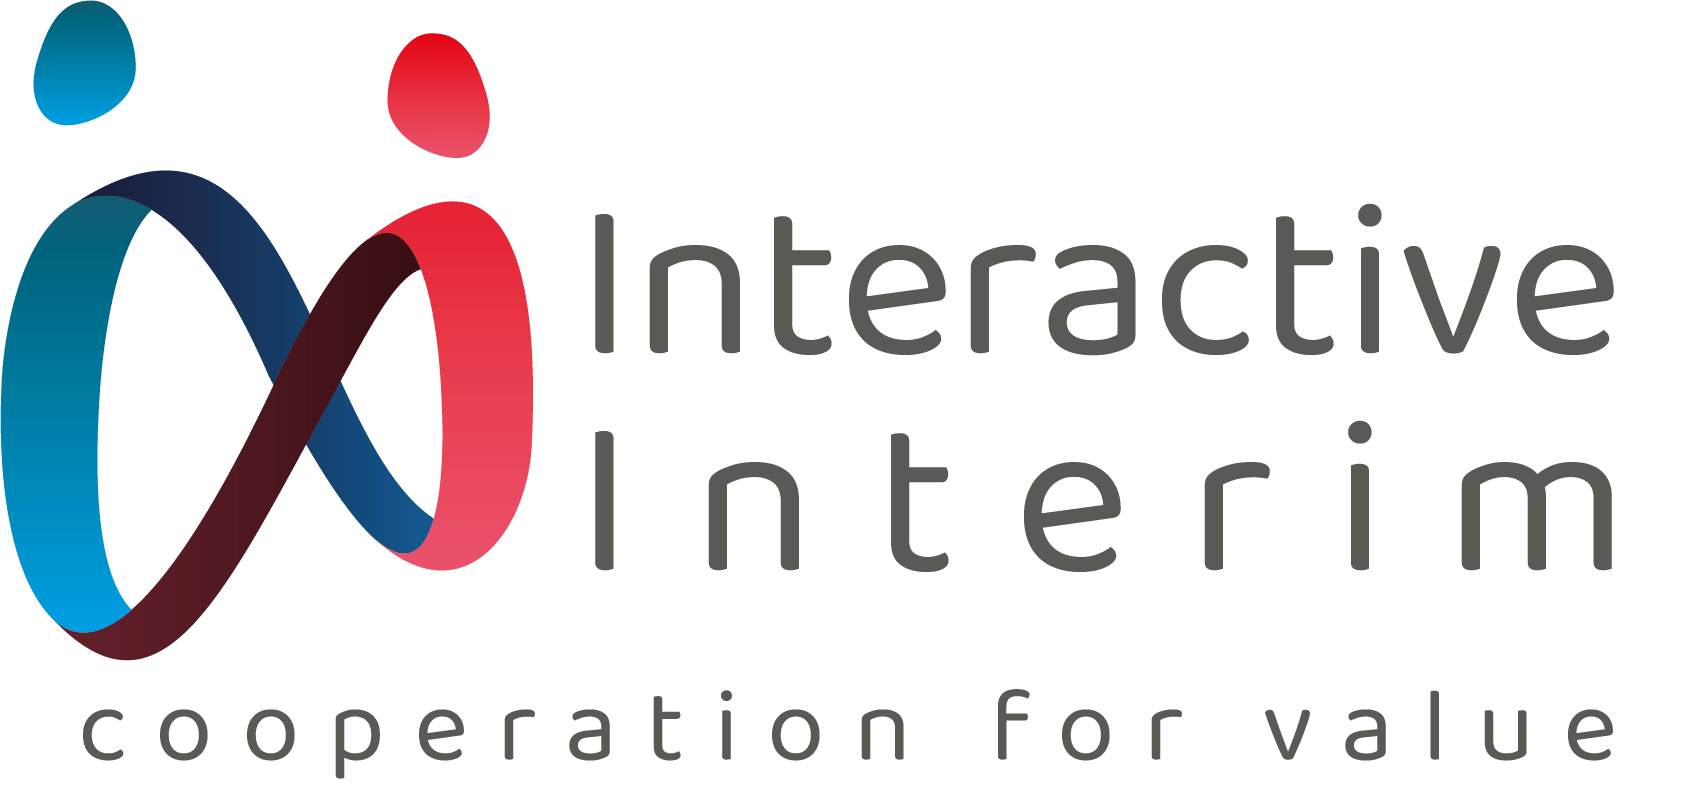 Interactive Interim Network e.V.